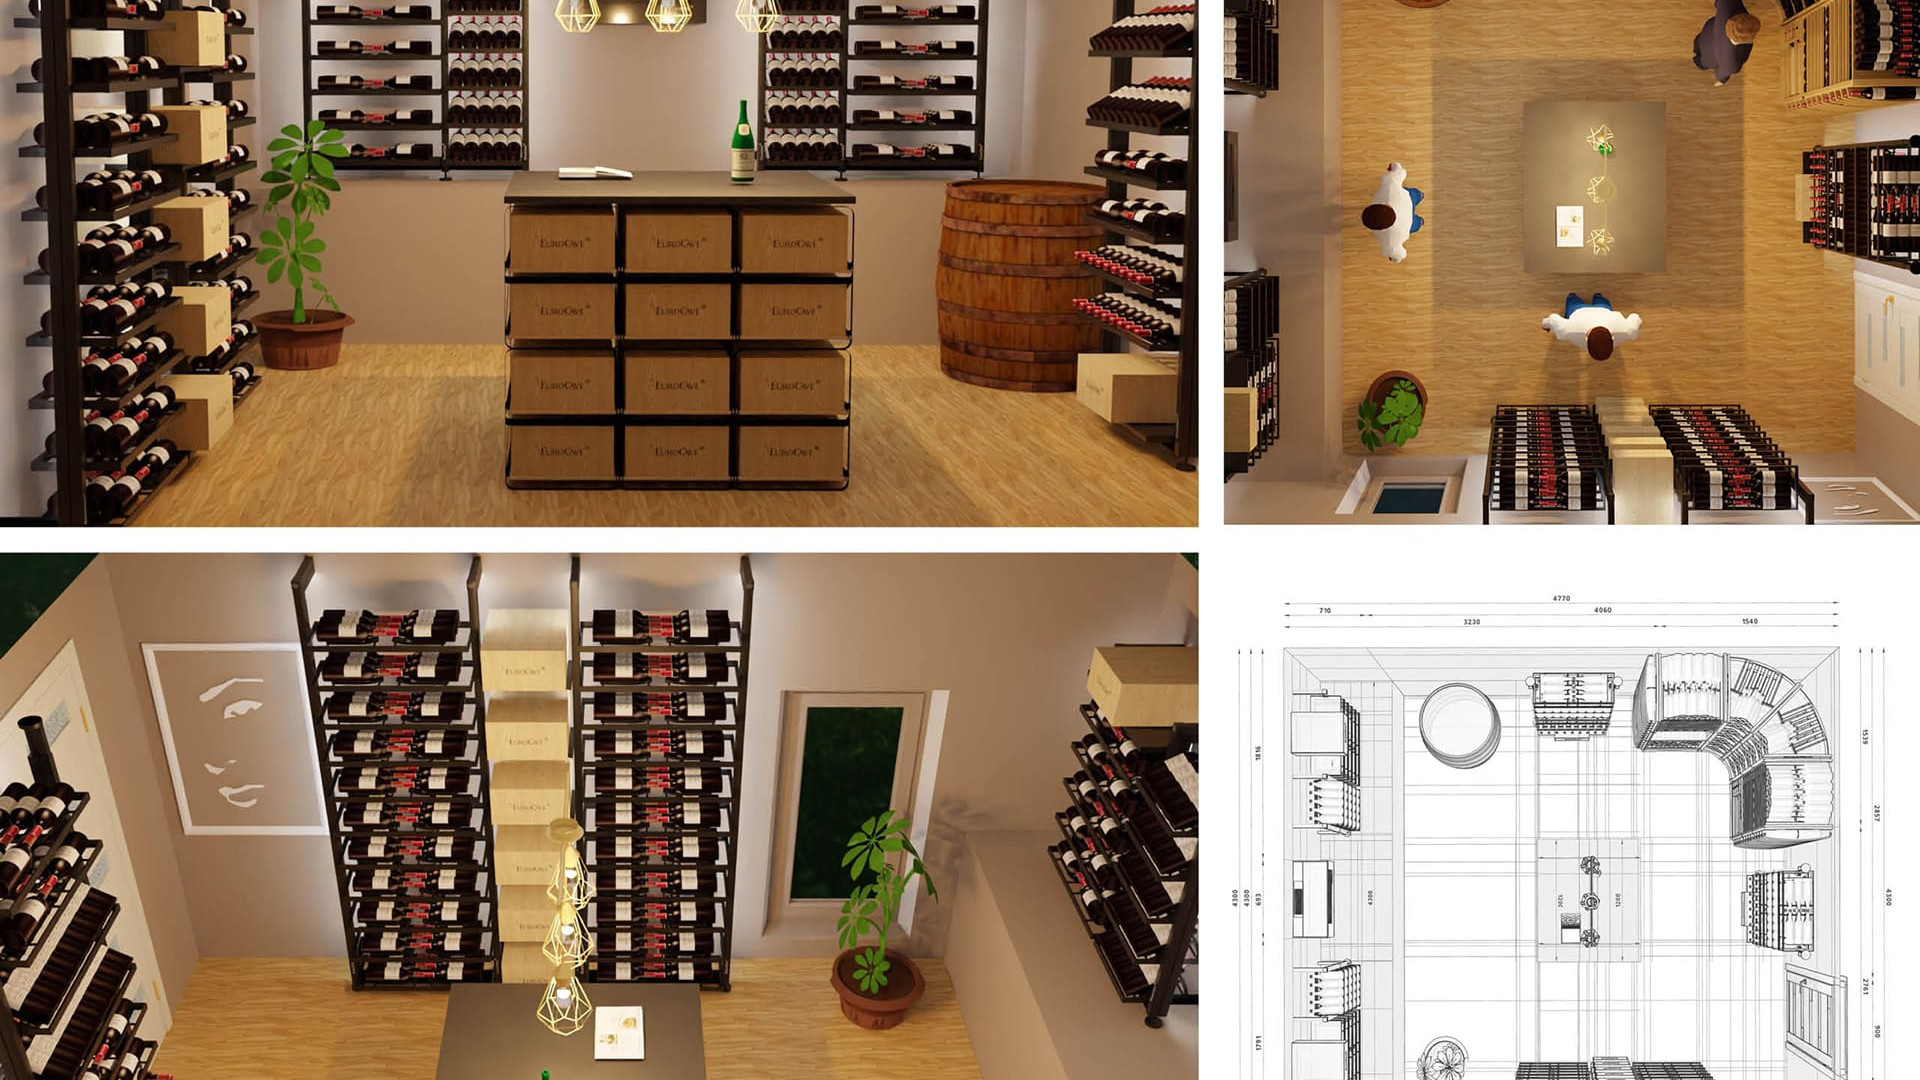 Conception 3d avec rendu réaliste d'un projet de cave à vin personnalisée et configuration des options du mobilier rangement vin. Décoration cave.